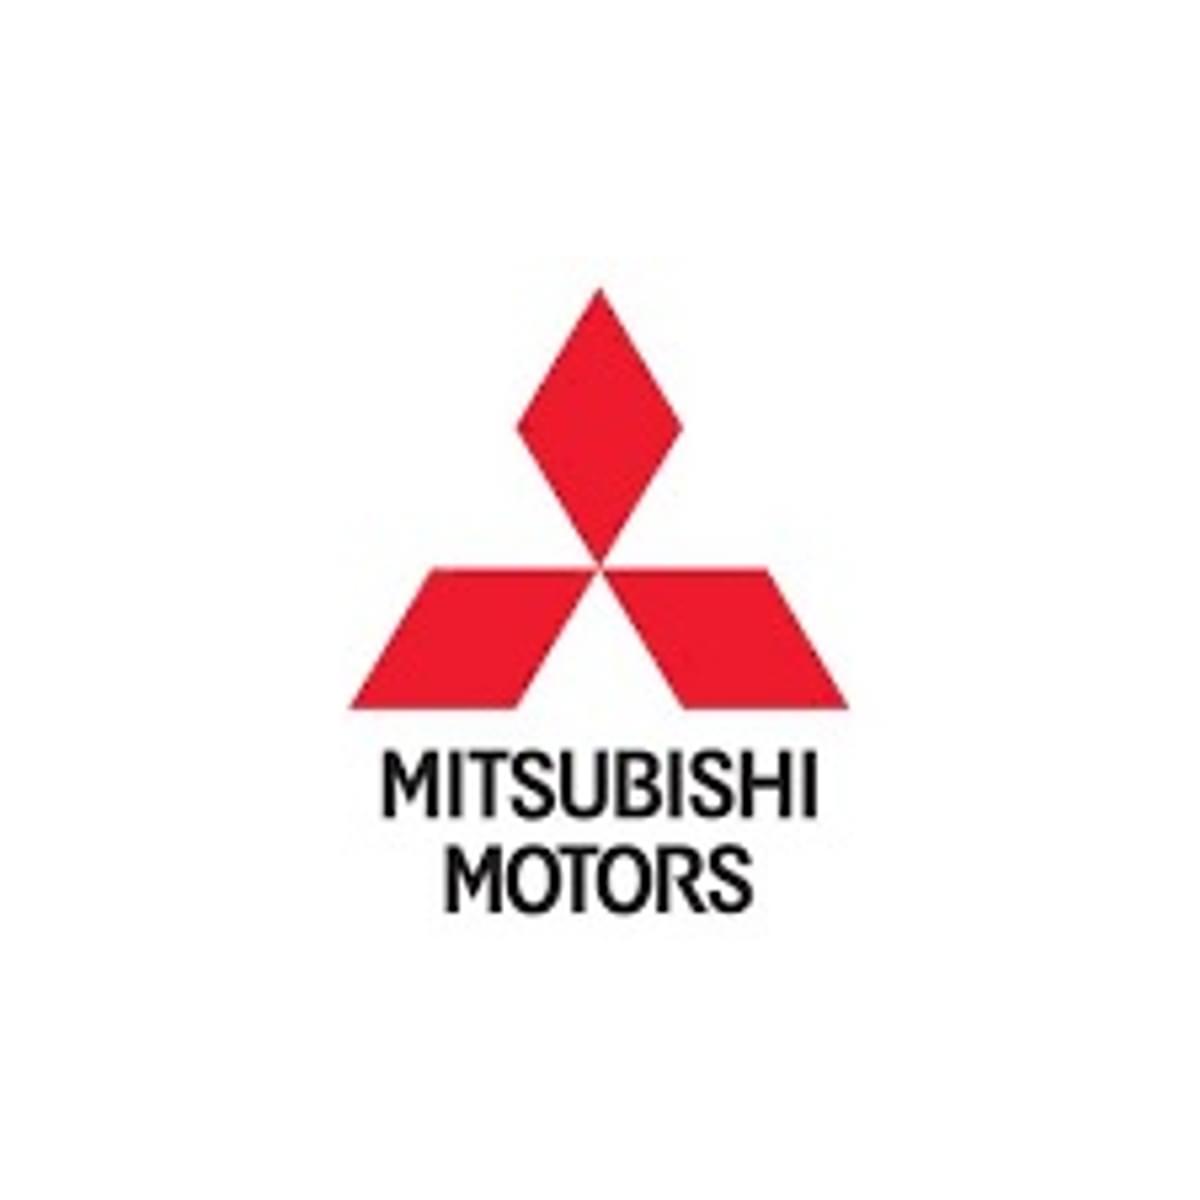 Mitsubishi zet Box in voor cloud content management image